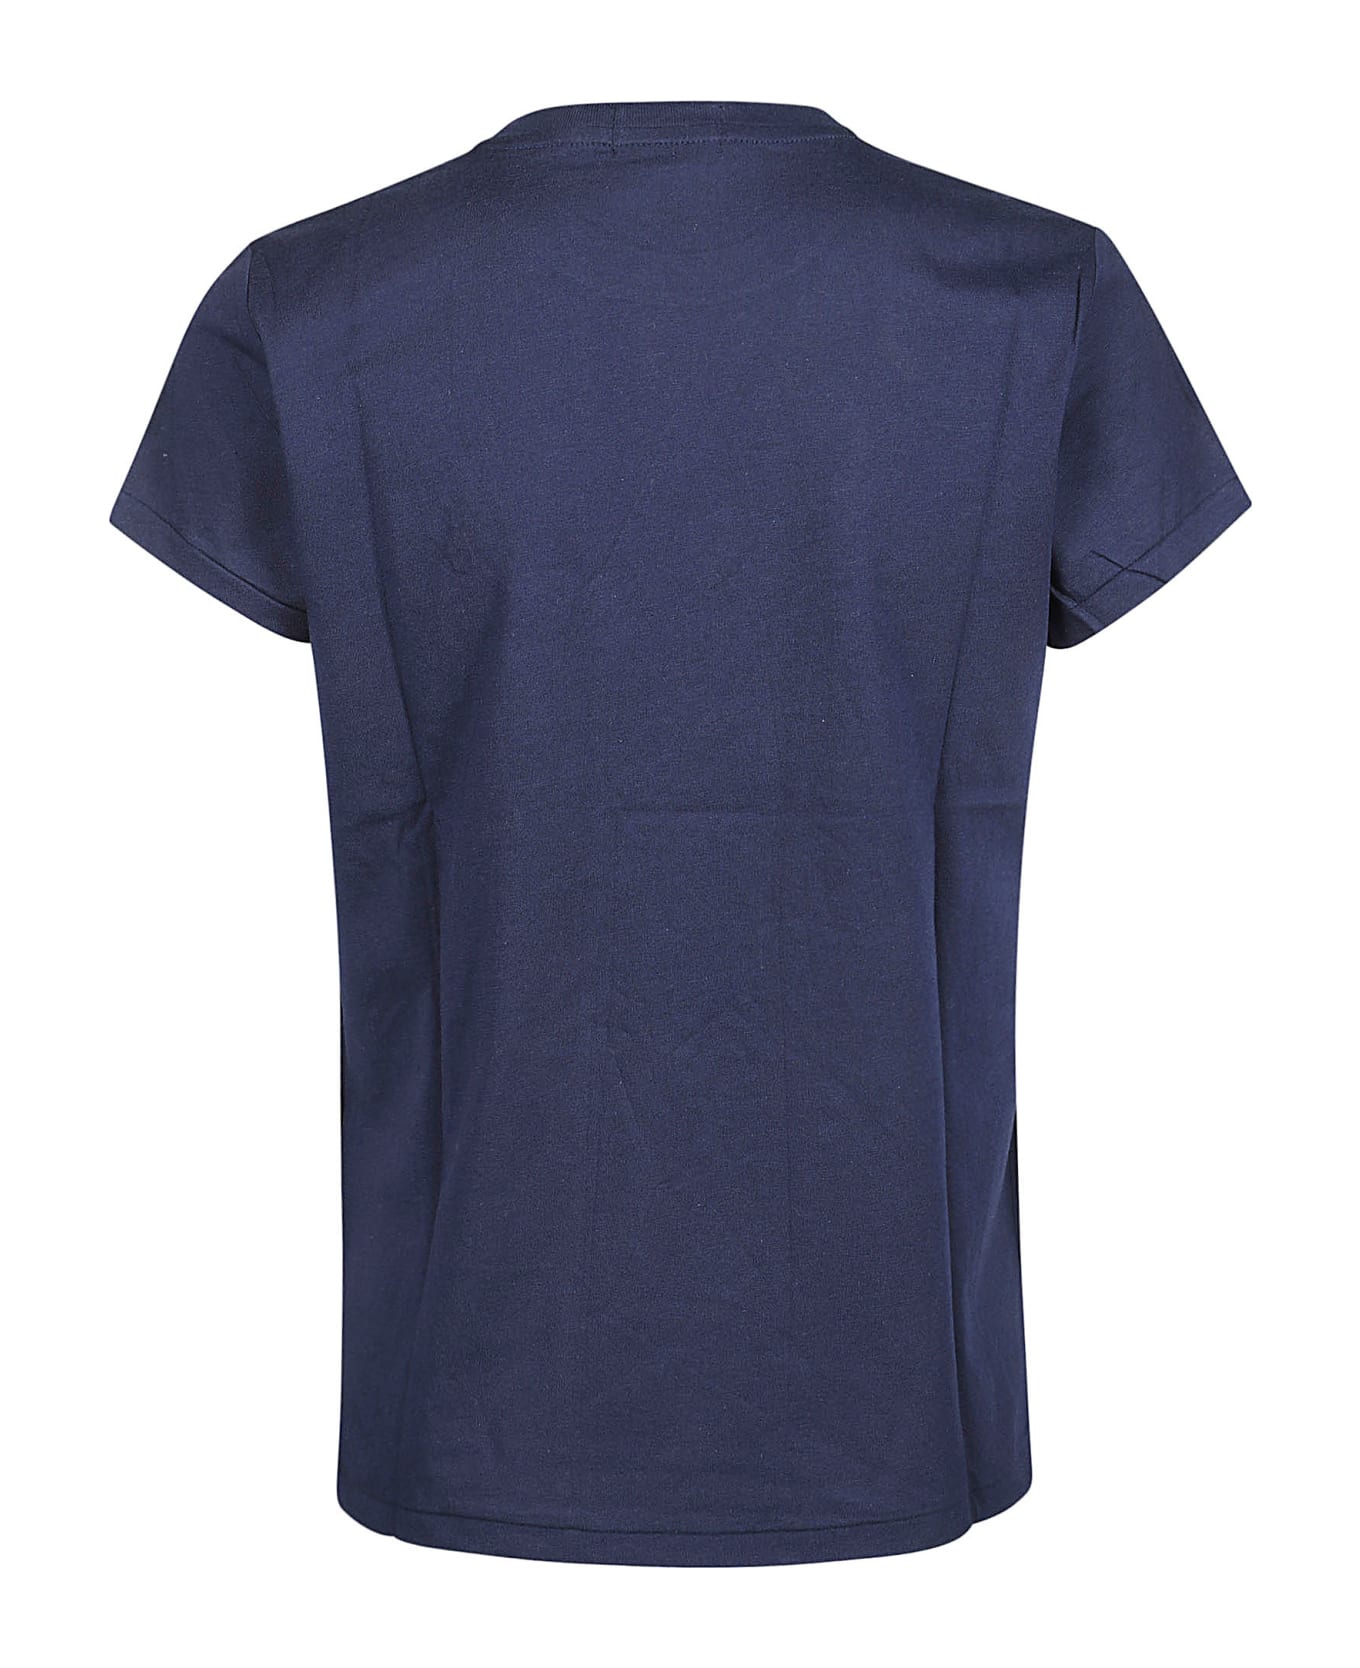 Polo Ralph Lauren New T-shirt - Cruise Navy